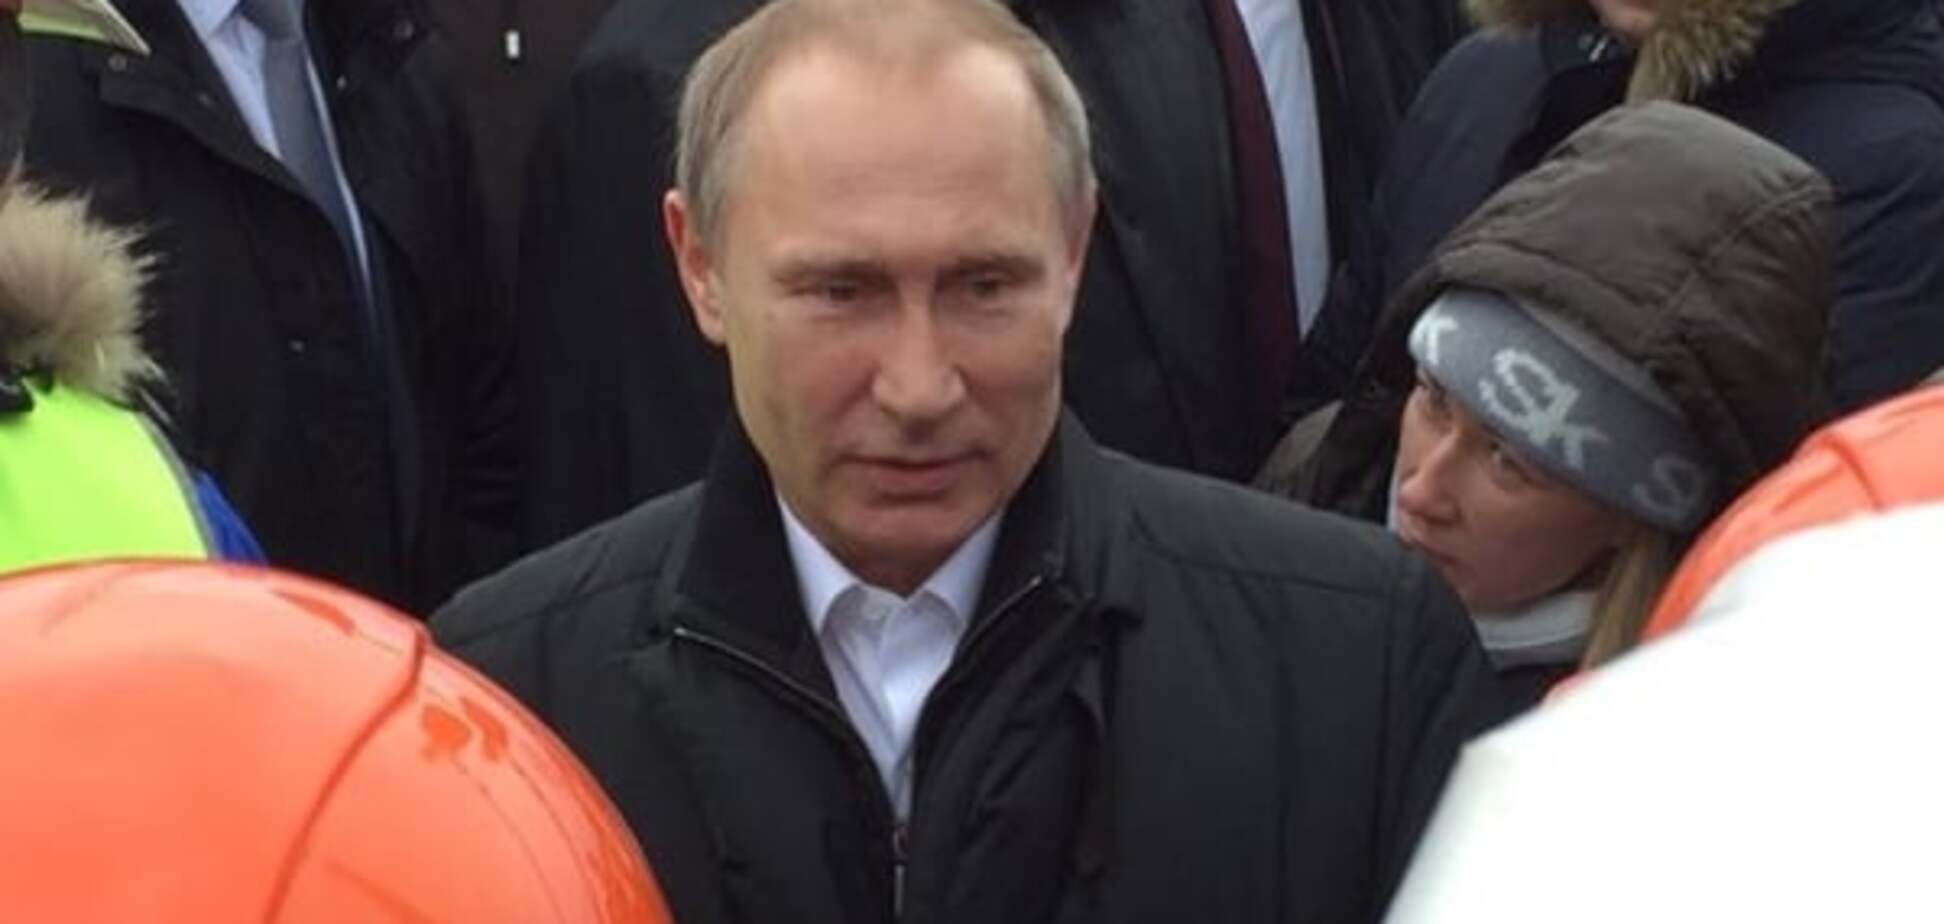 Путін у безглуздому пуховику прибув до Криму і сфотографувався з будівельниками. Опубліковані фото